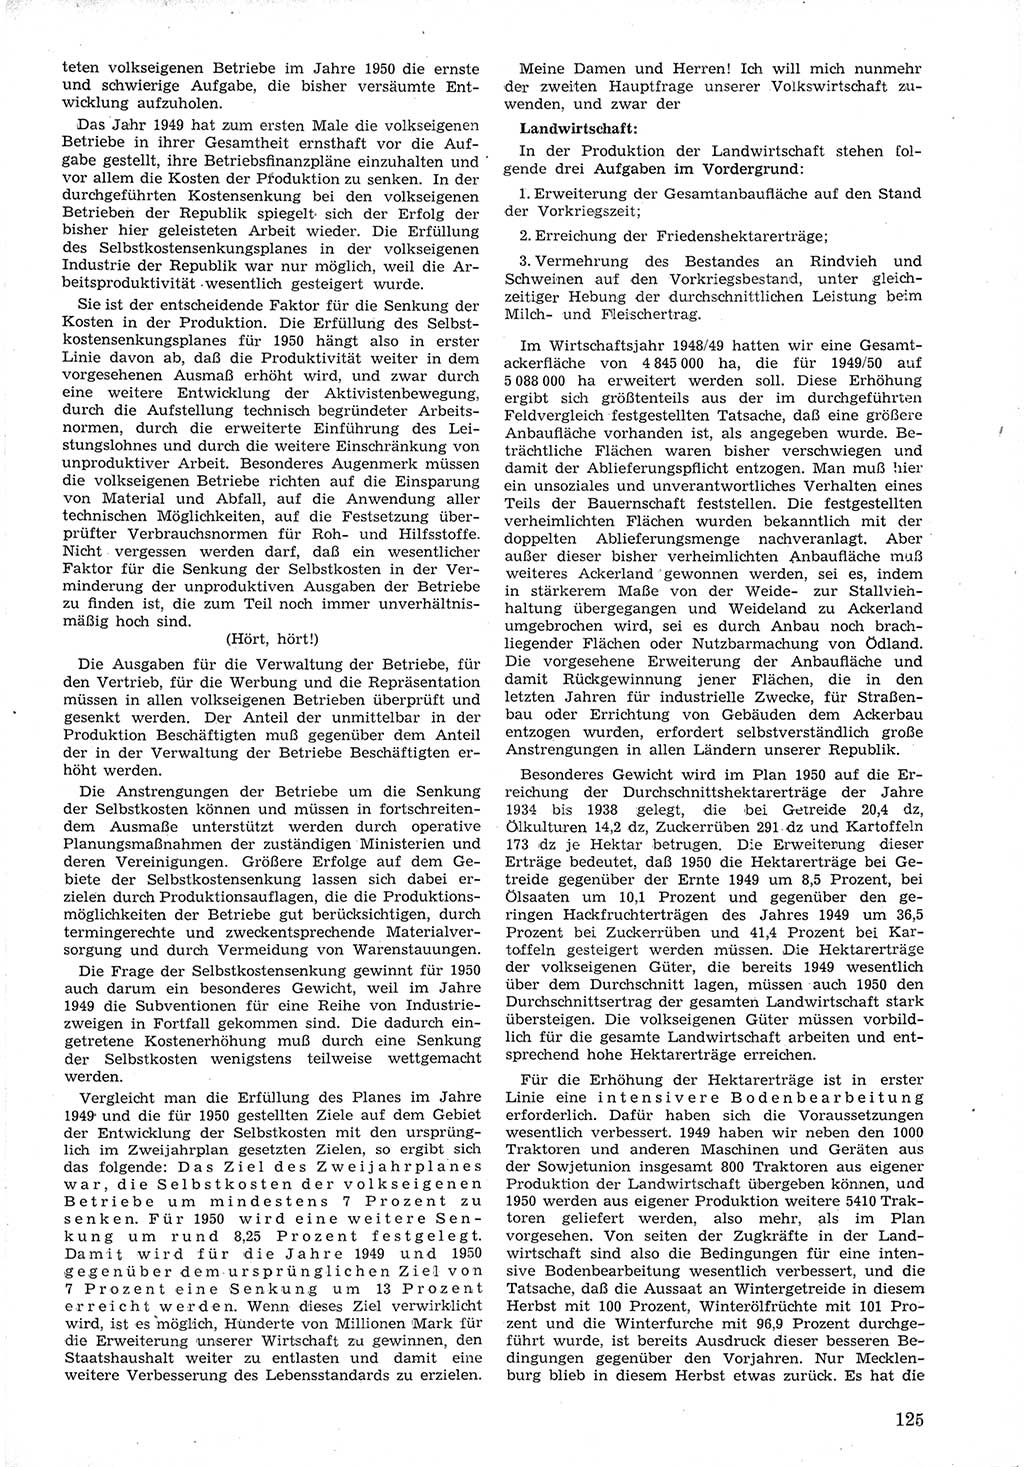 Provisorische Volkskammer (VK) der Deutschen Demokratischen Republik (DDR) 1949-1950, Dokument 137 (Prov. VK DDR 1949-1950, Dok. 137)